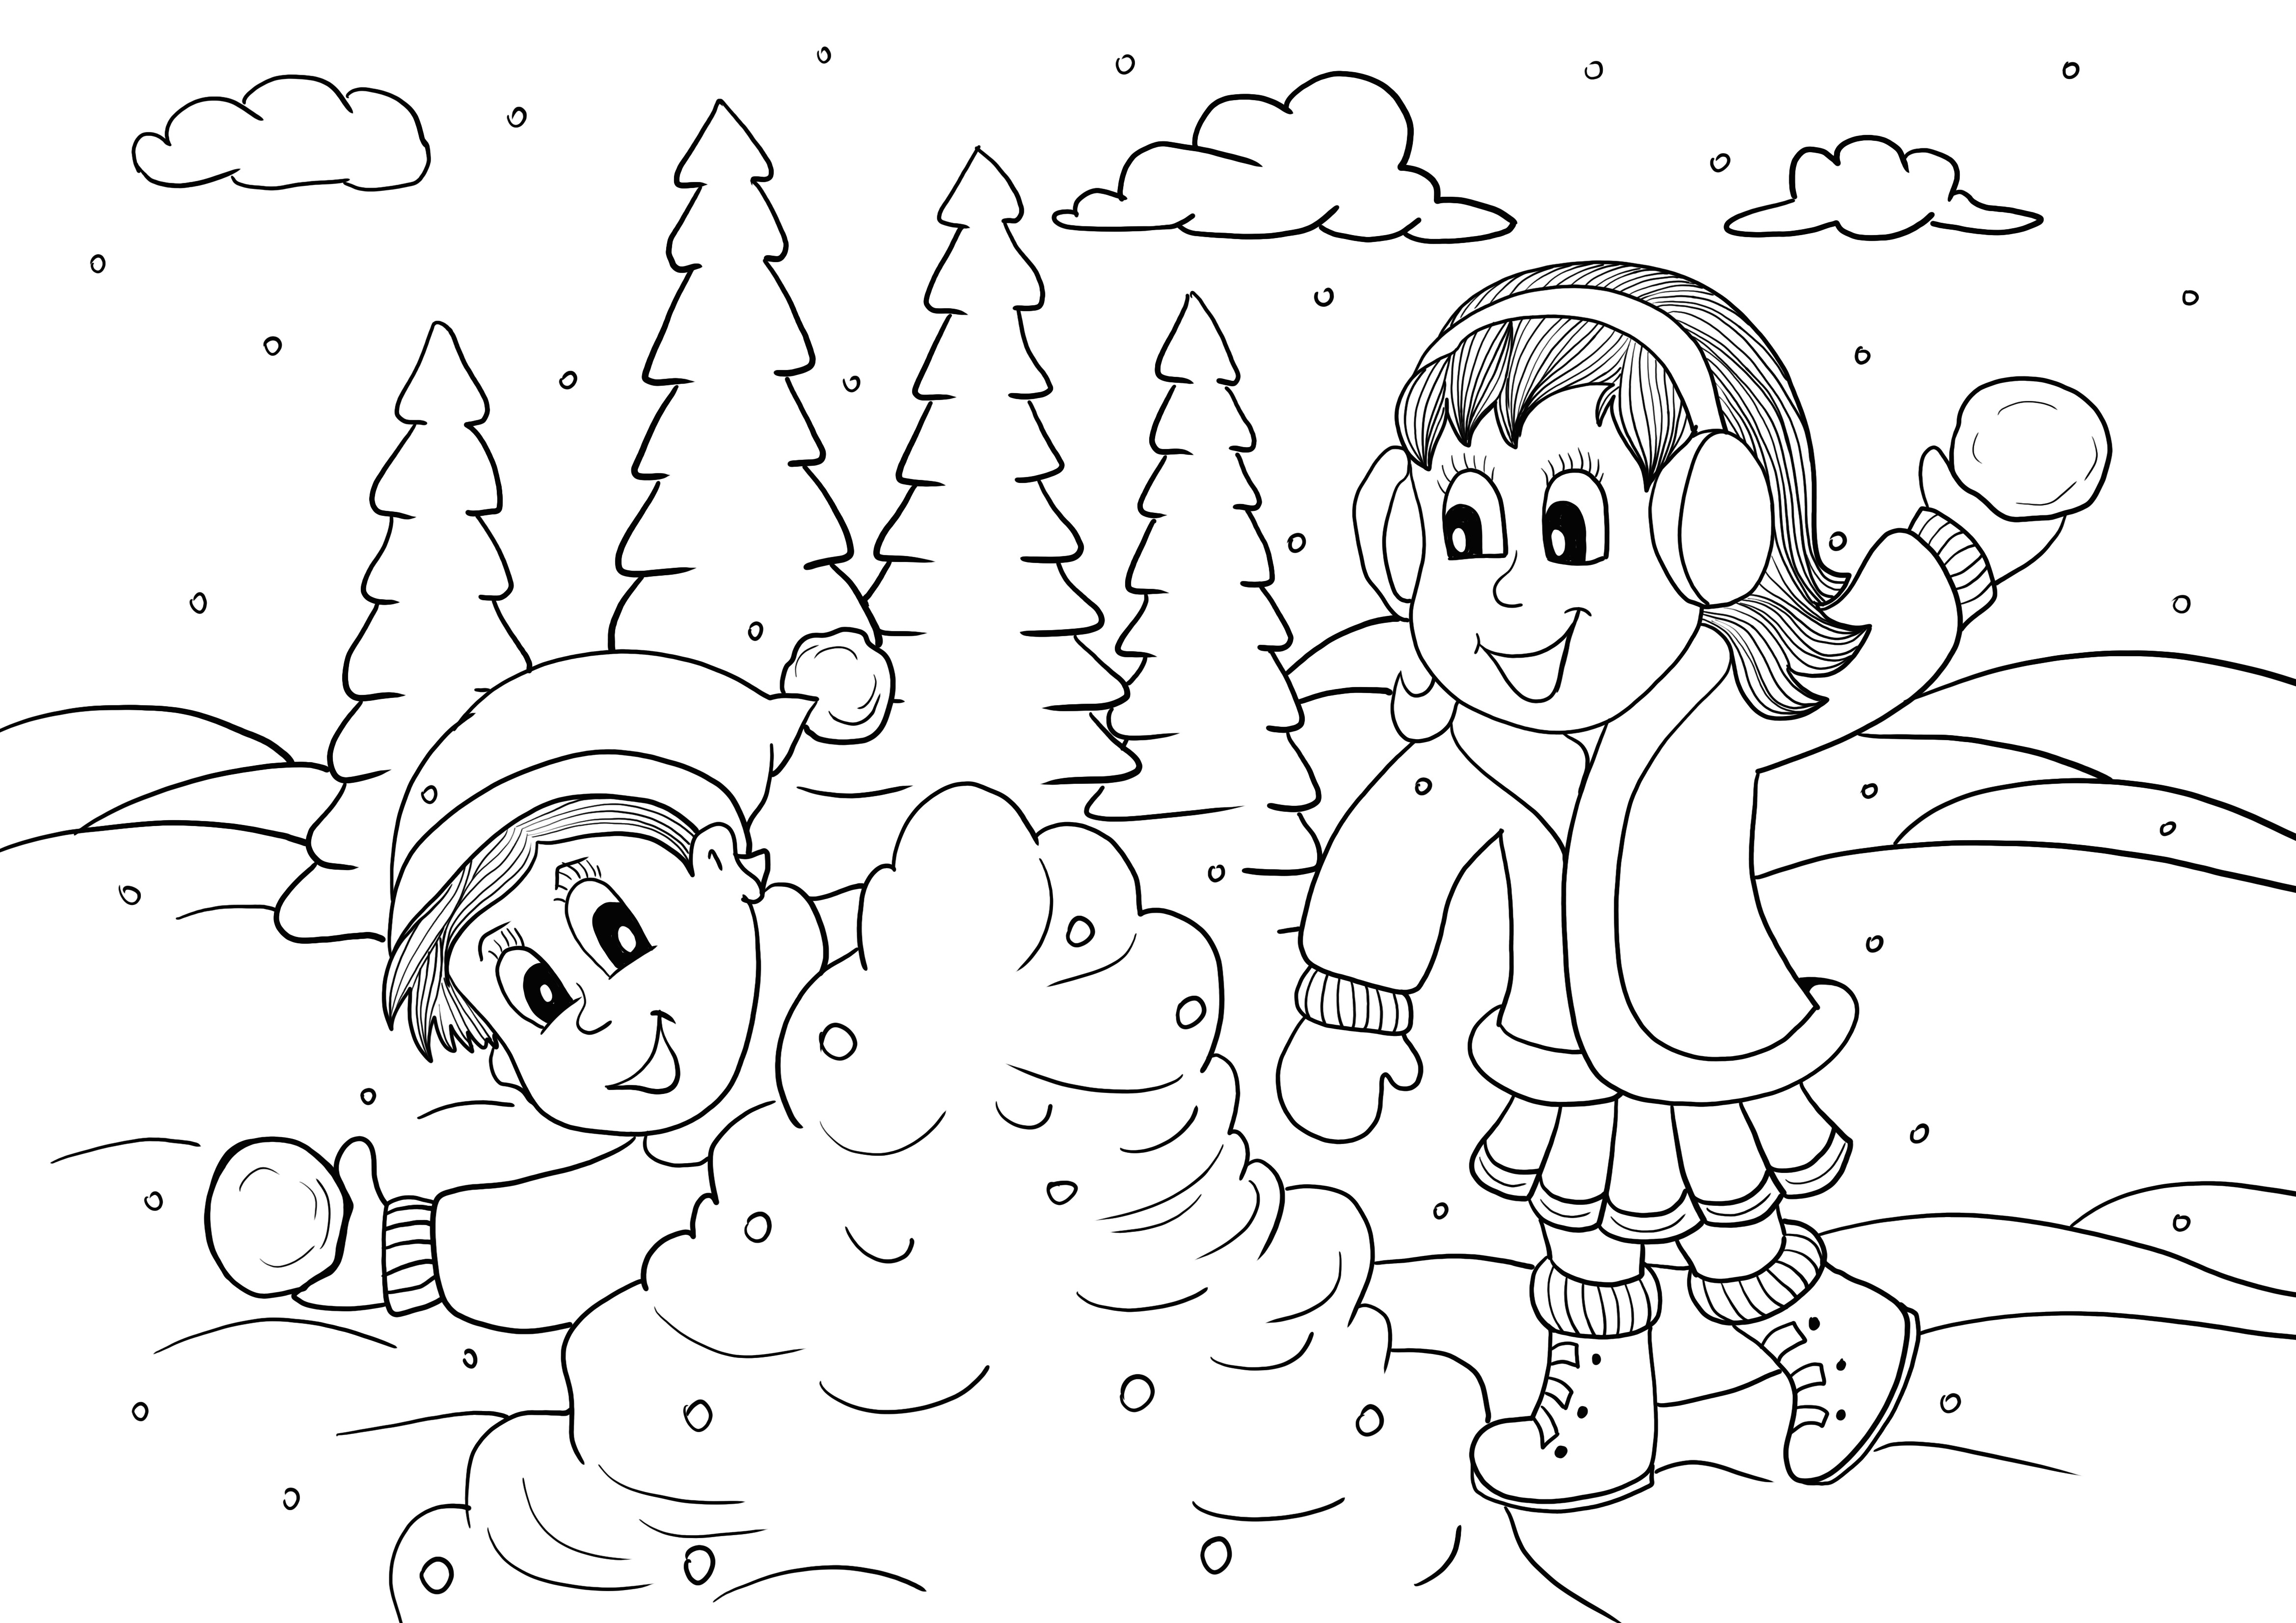  ぬりえと無料の印刷物を遊んでいる子供と雪玉